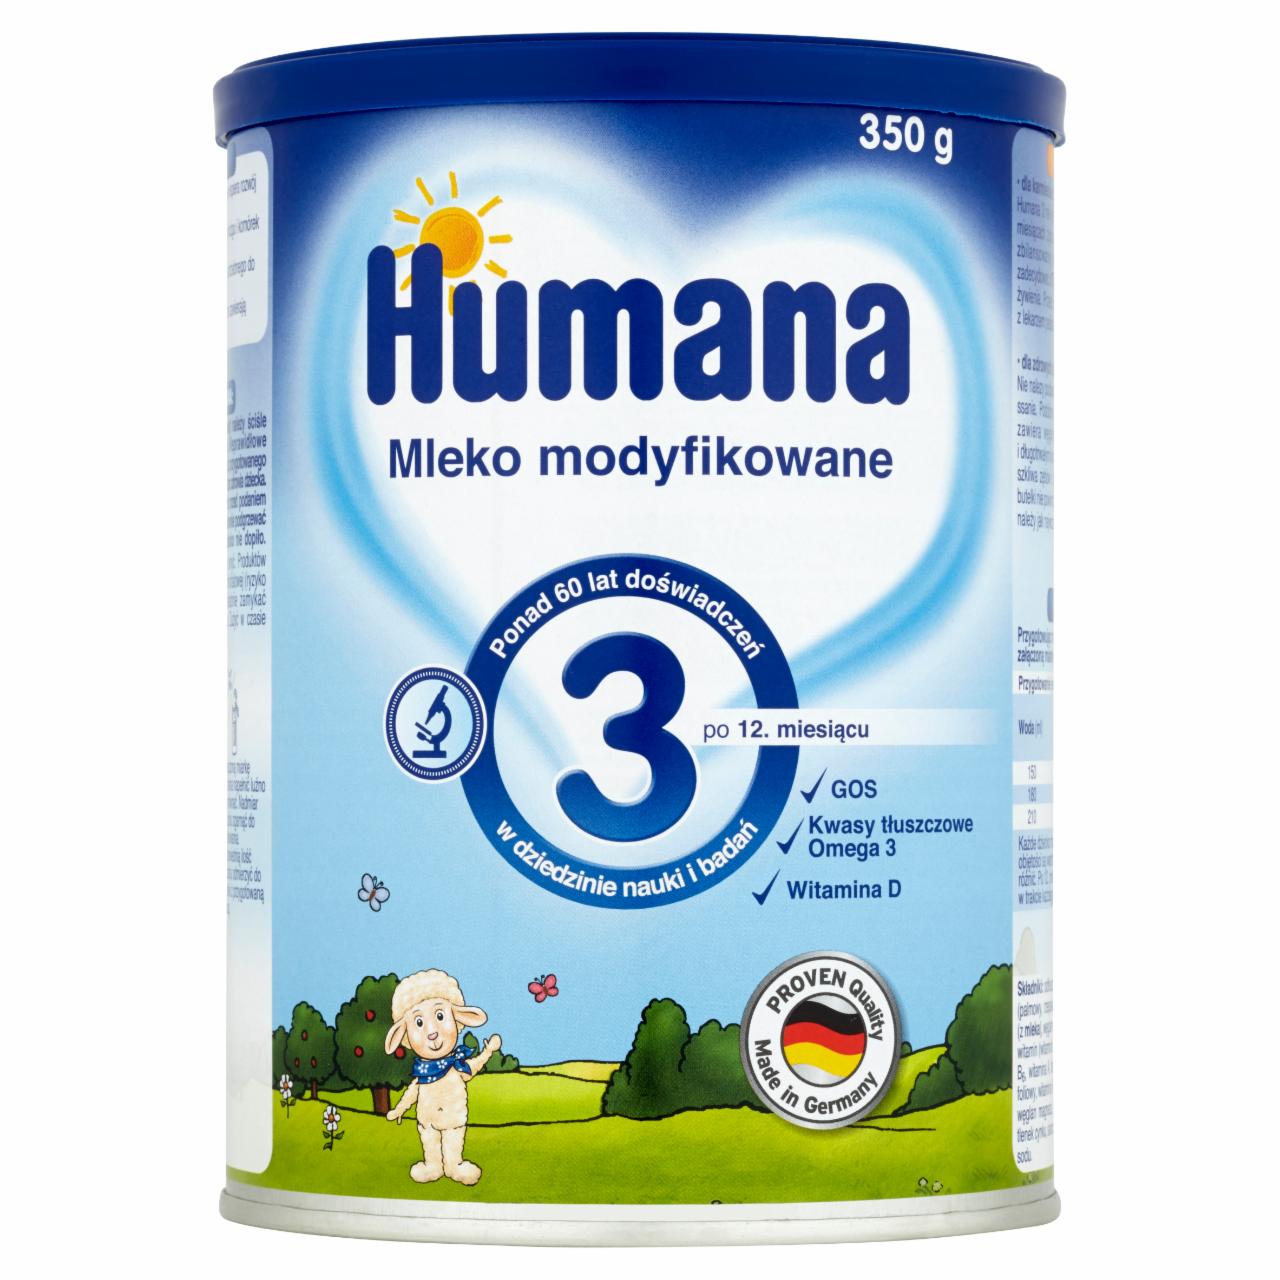 Zdjęcia - Humana 3 Mleko modyfikowane po 12. miesiącu 350 g